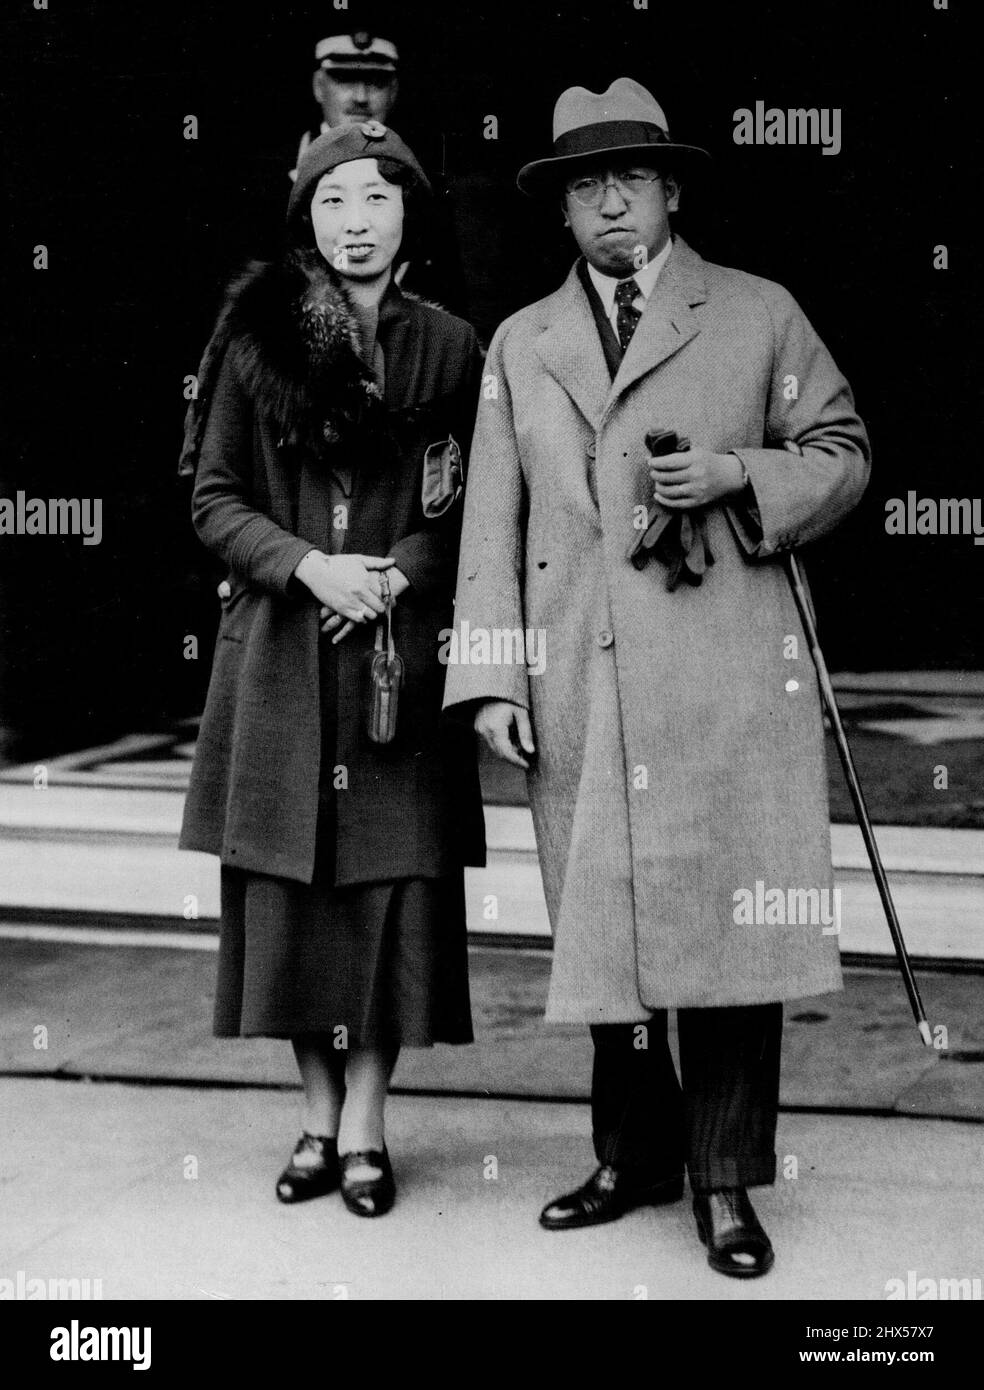 Japanische Königsfamilie in Edinburgh -- Prinz Tsunenori Kaya, Cousin des japanischen Imperators, mit seiner Frau, Prinzessin Toshiko, fotografiert bei ihrer Ankunft in der Princess Street Edinburgh aus London. Sie sind auf einer Tour durch Schottland. 13.Mai 1934. (Foto von Topical Press). Stockfoto